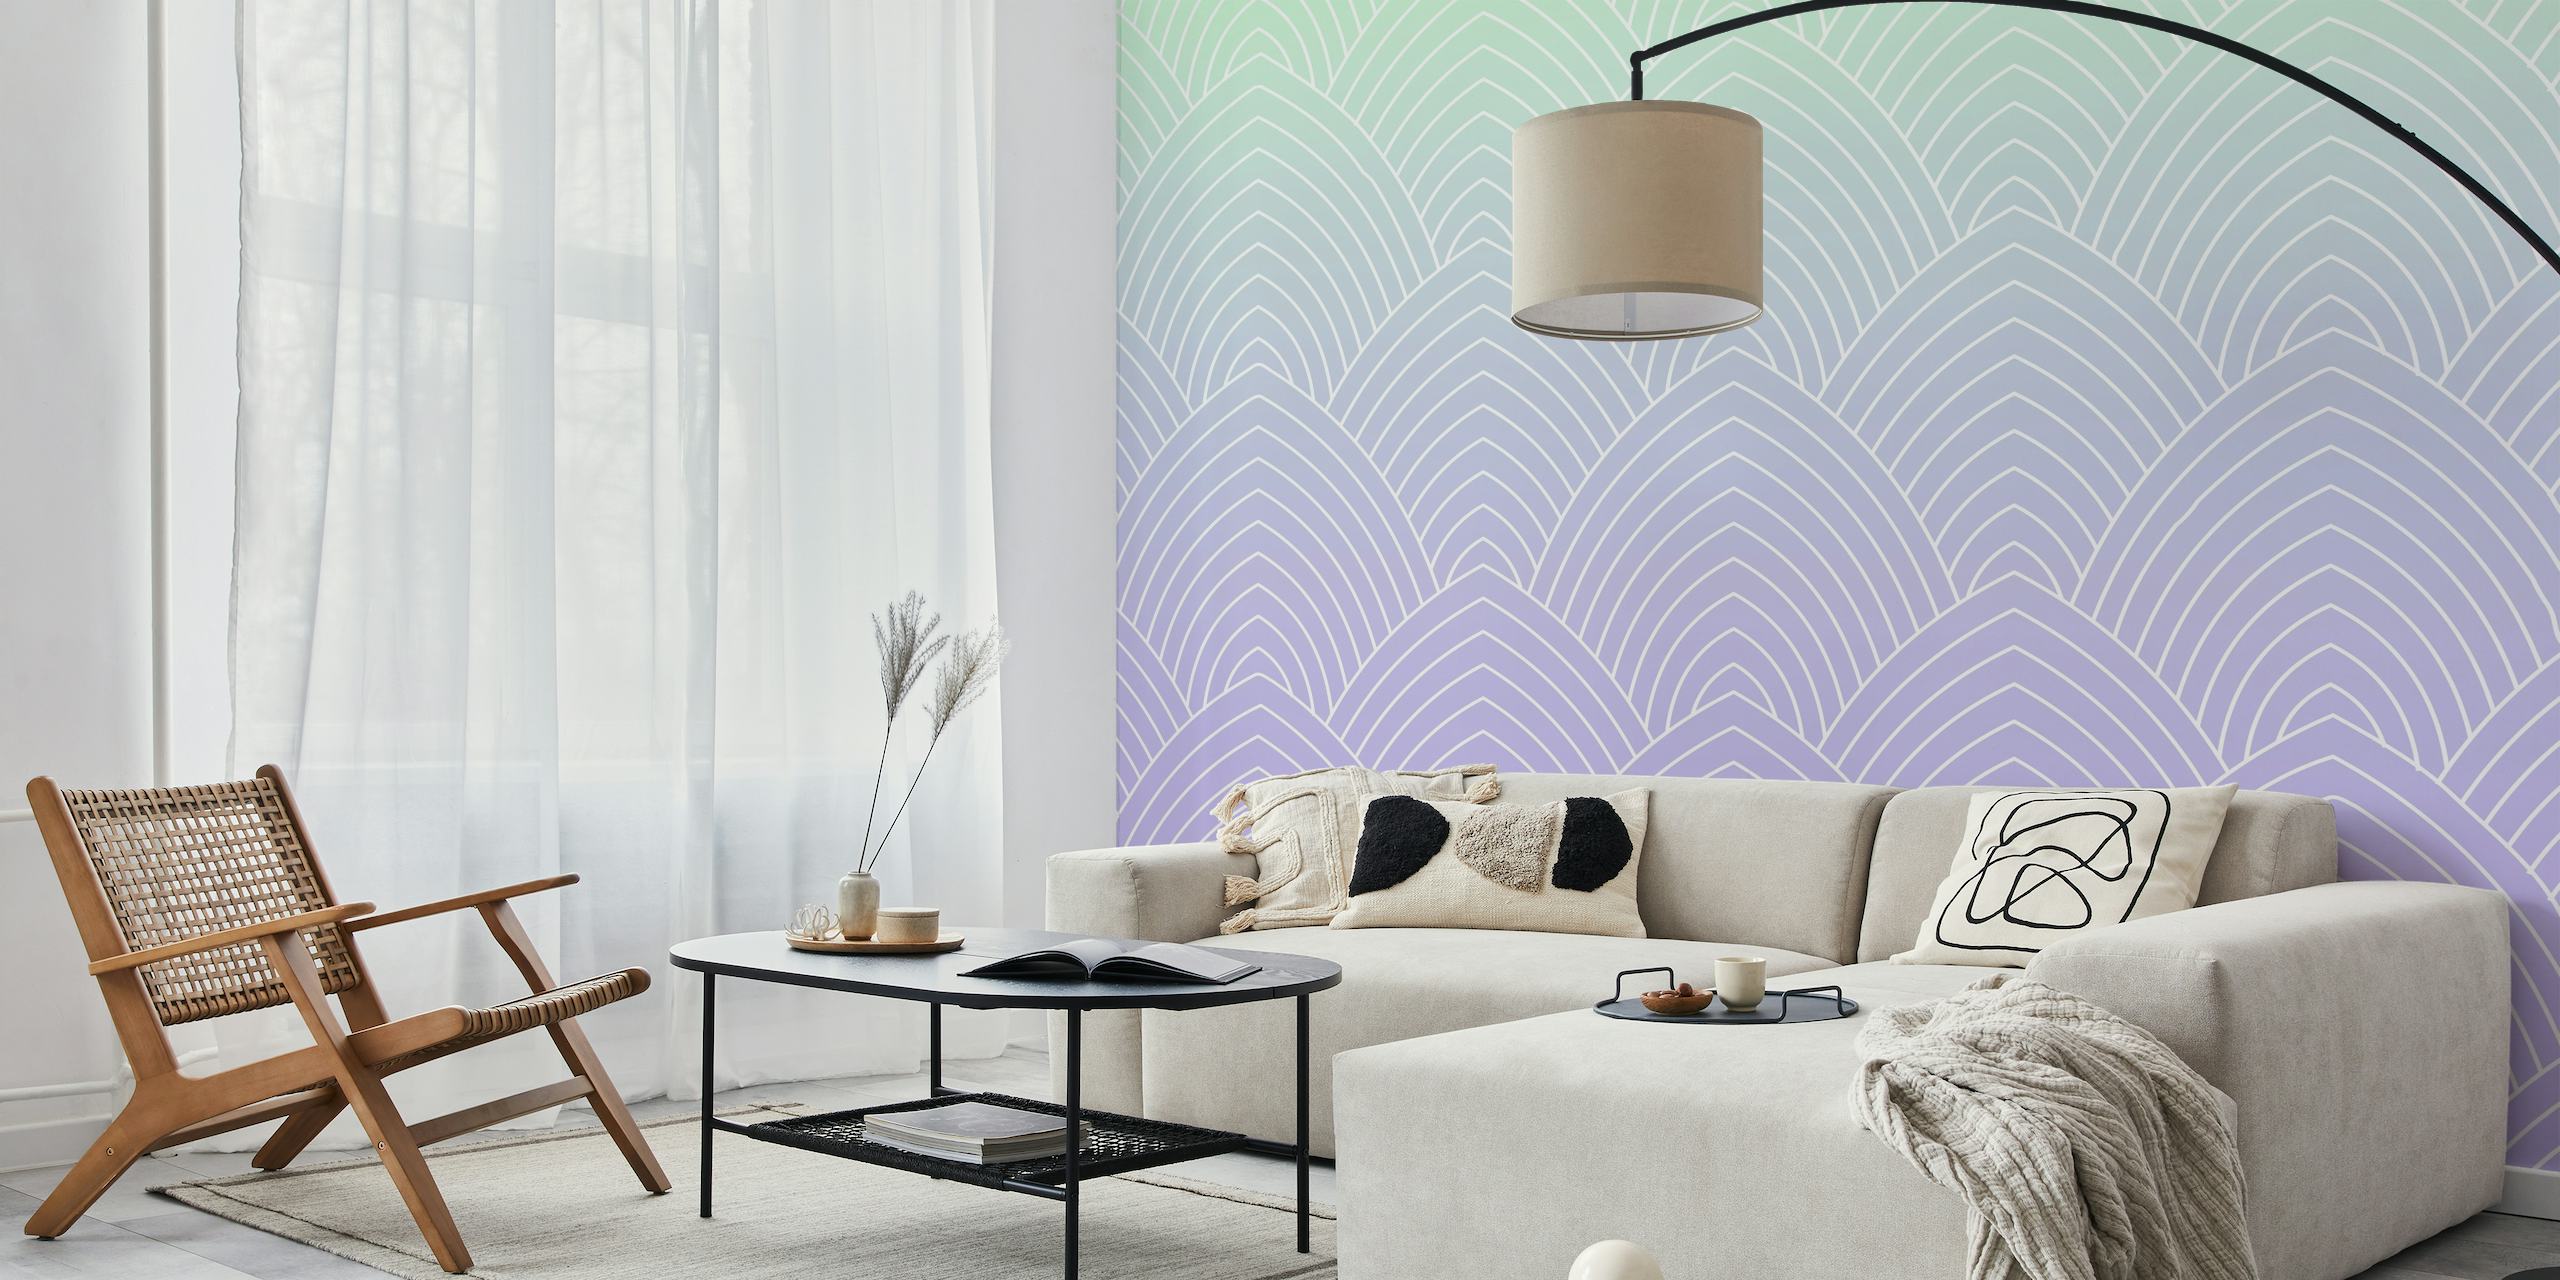 Fotomural de pared con diseño modernista Art Déco de lavanda en suaves tonos violetas.